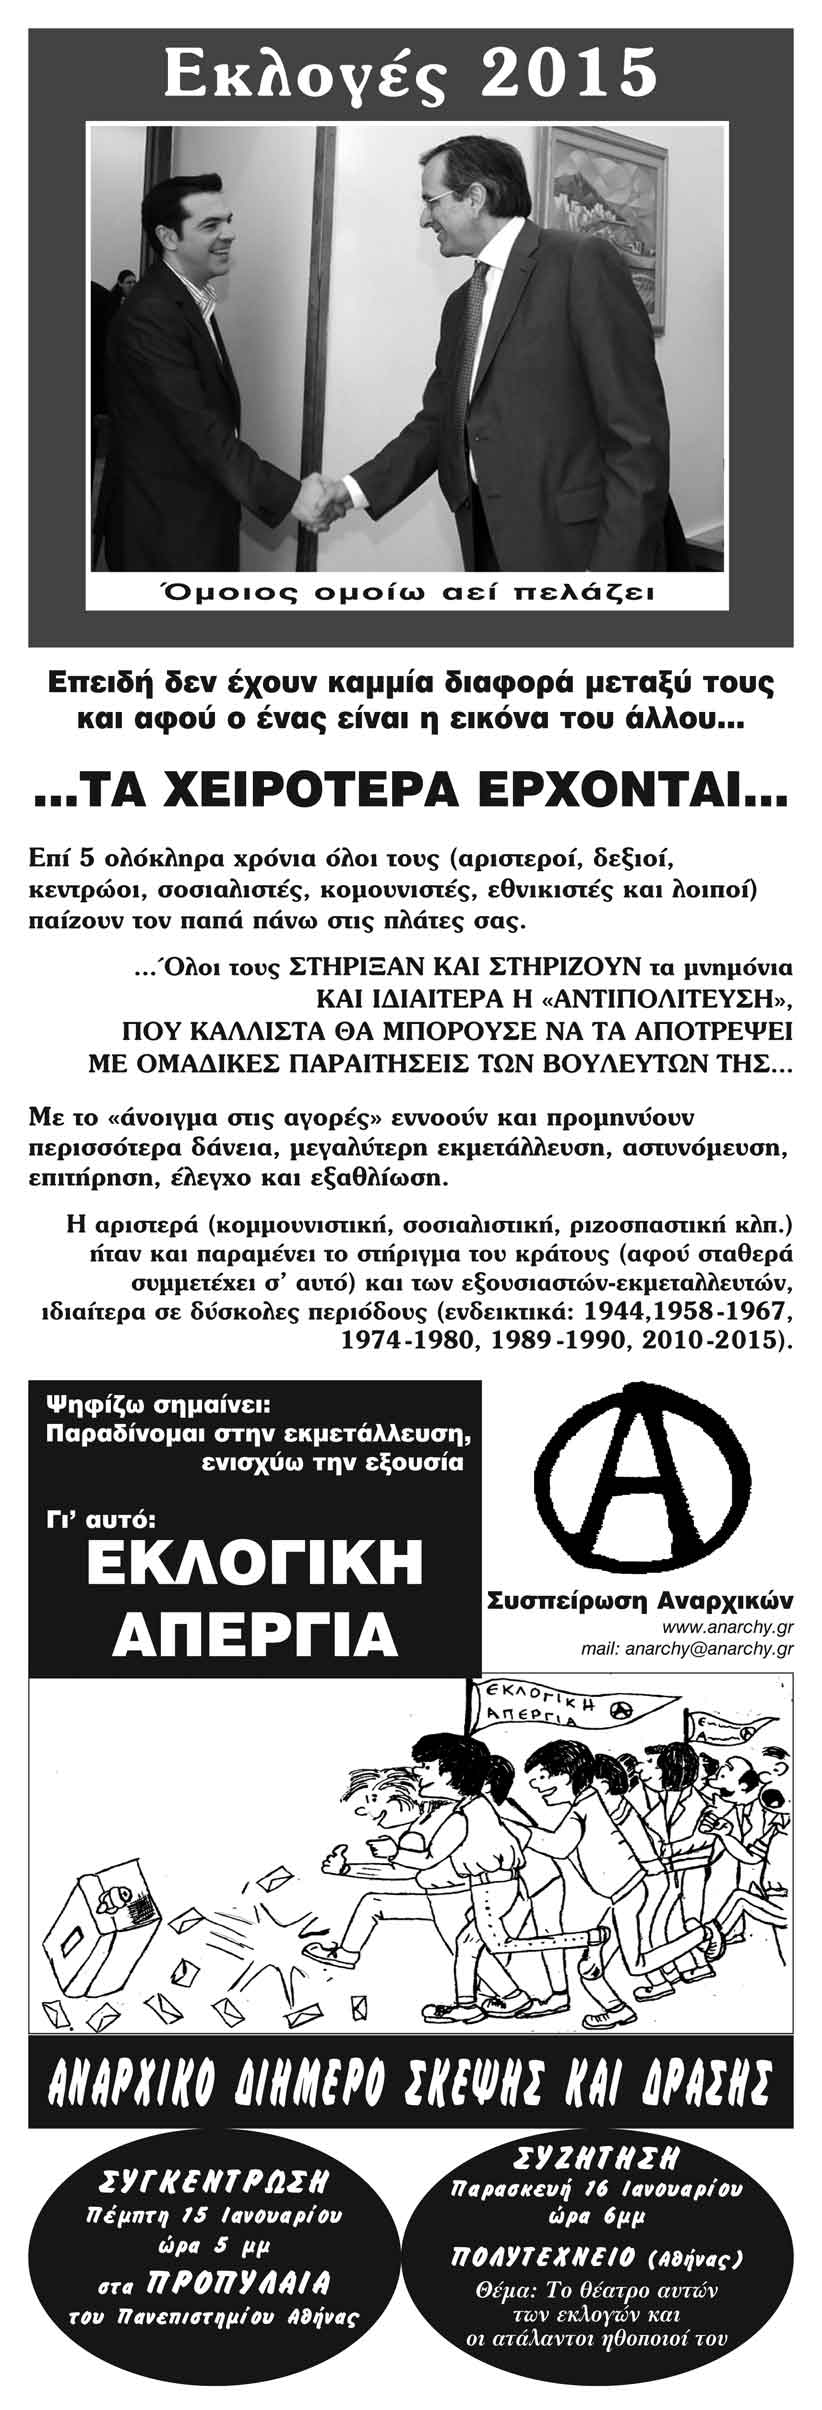 Αθήνα: Αναρχικό Aντιεκλογικό Διήμερο Σκέψης και Δράσης [15 και 16/01]